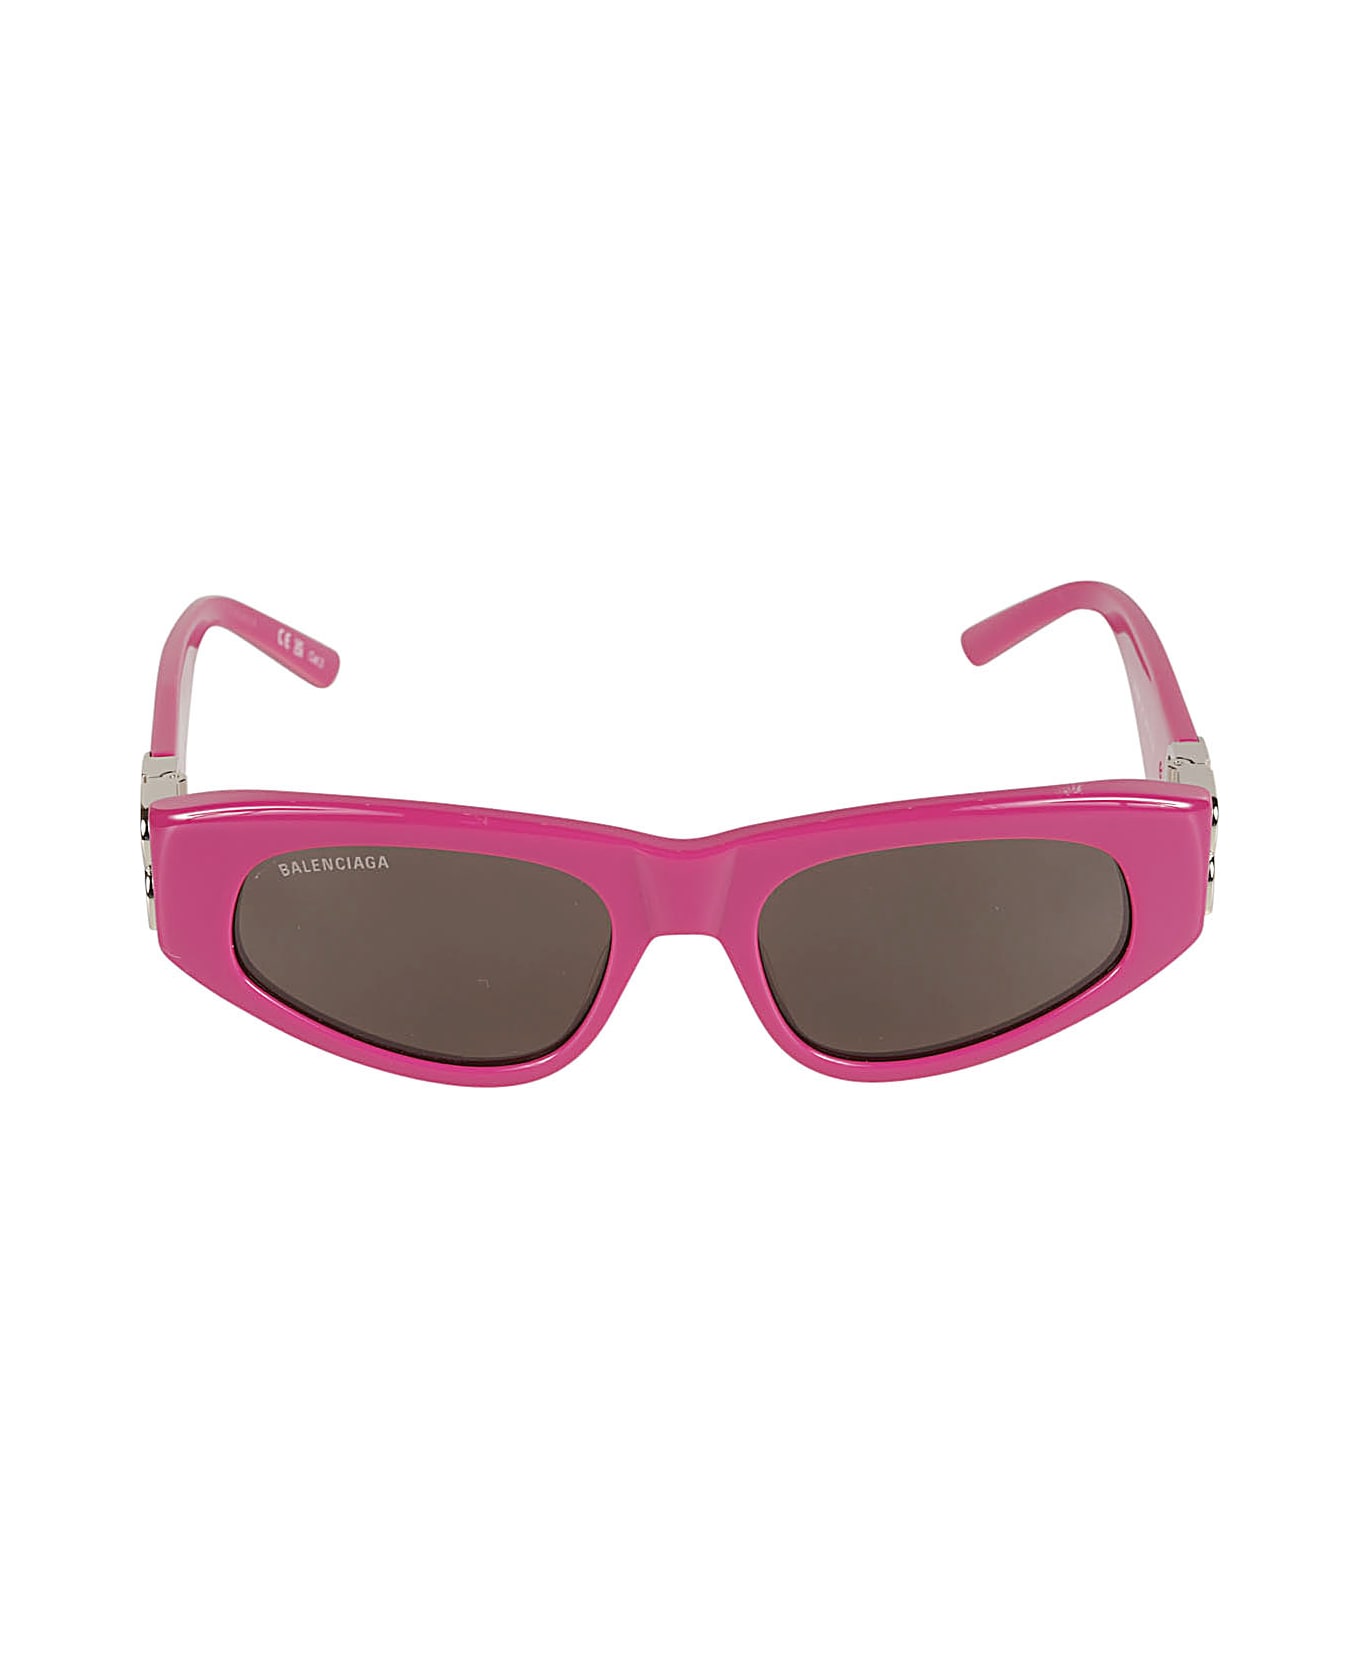 Balenciaga Eyewear Bb Hinge Logo Sided Sunglasses - Fuchsia/Silver/Grey